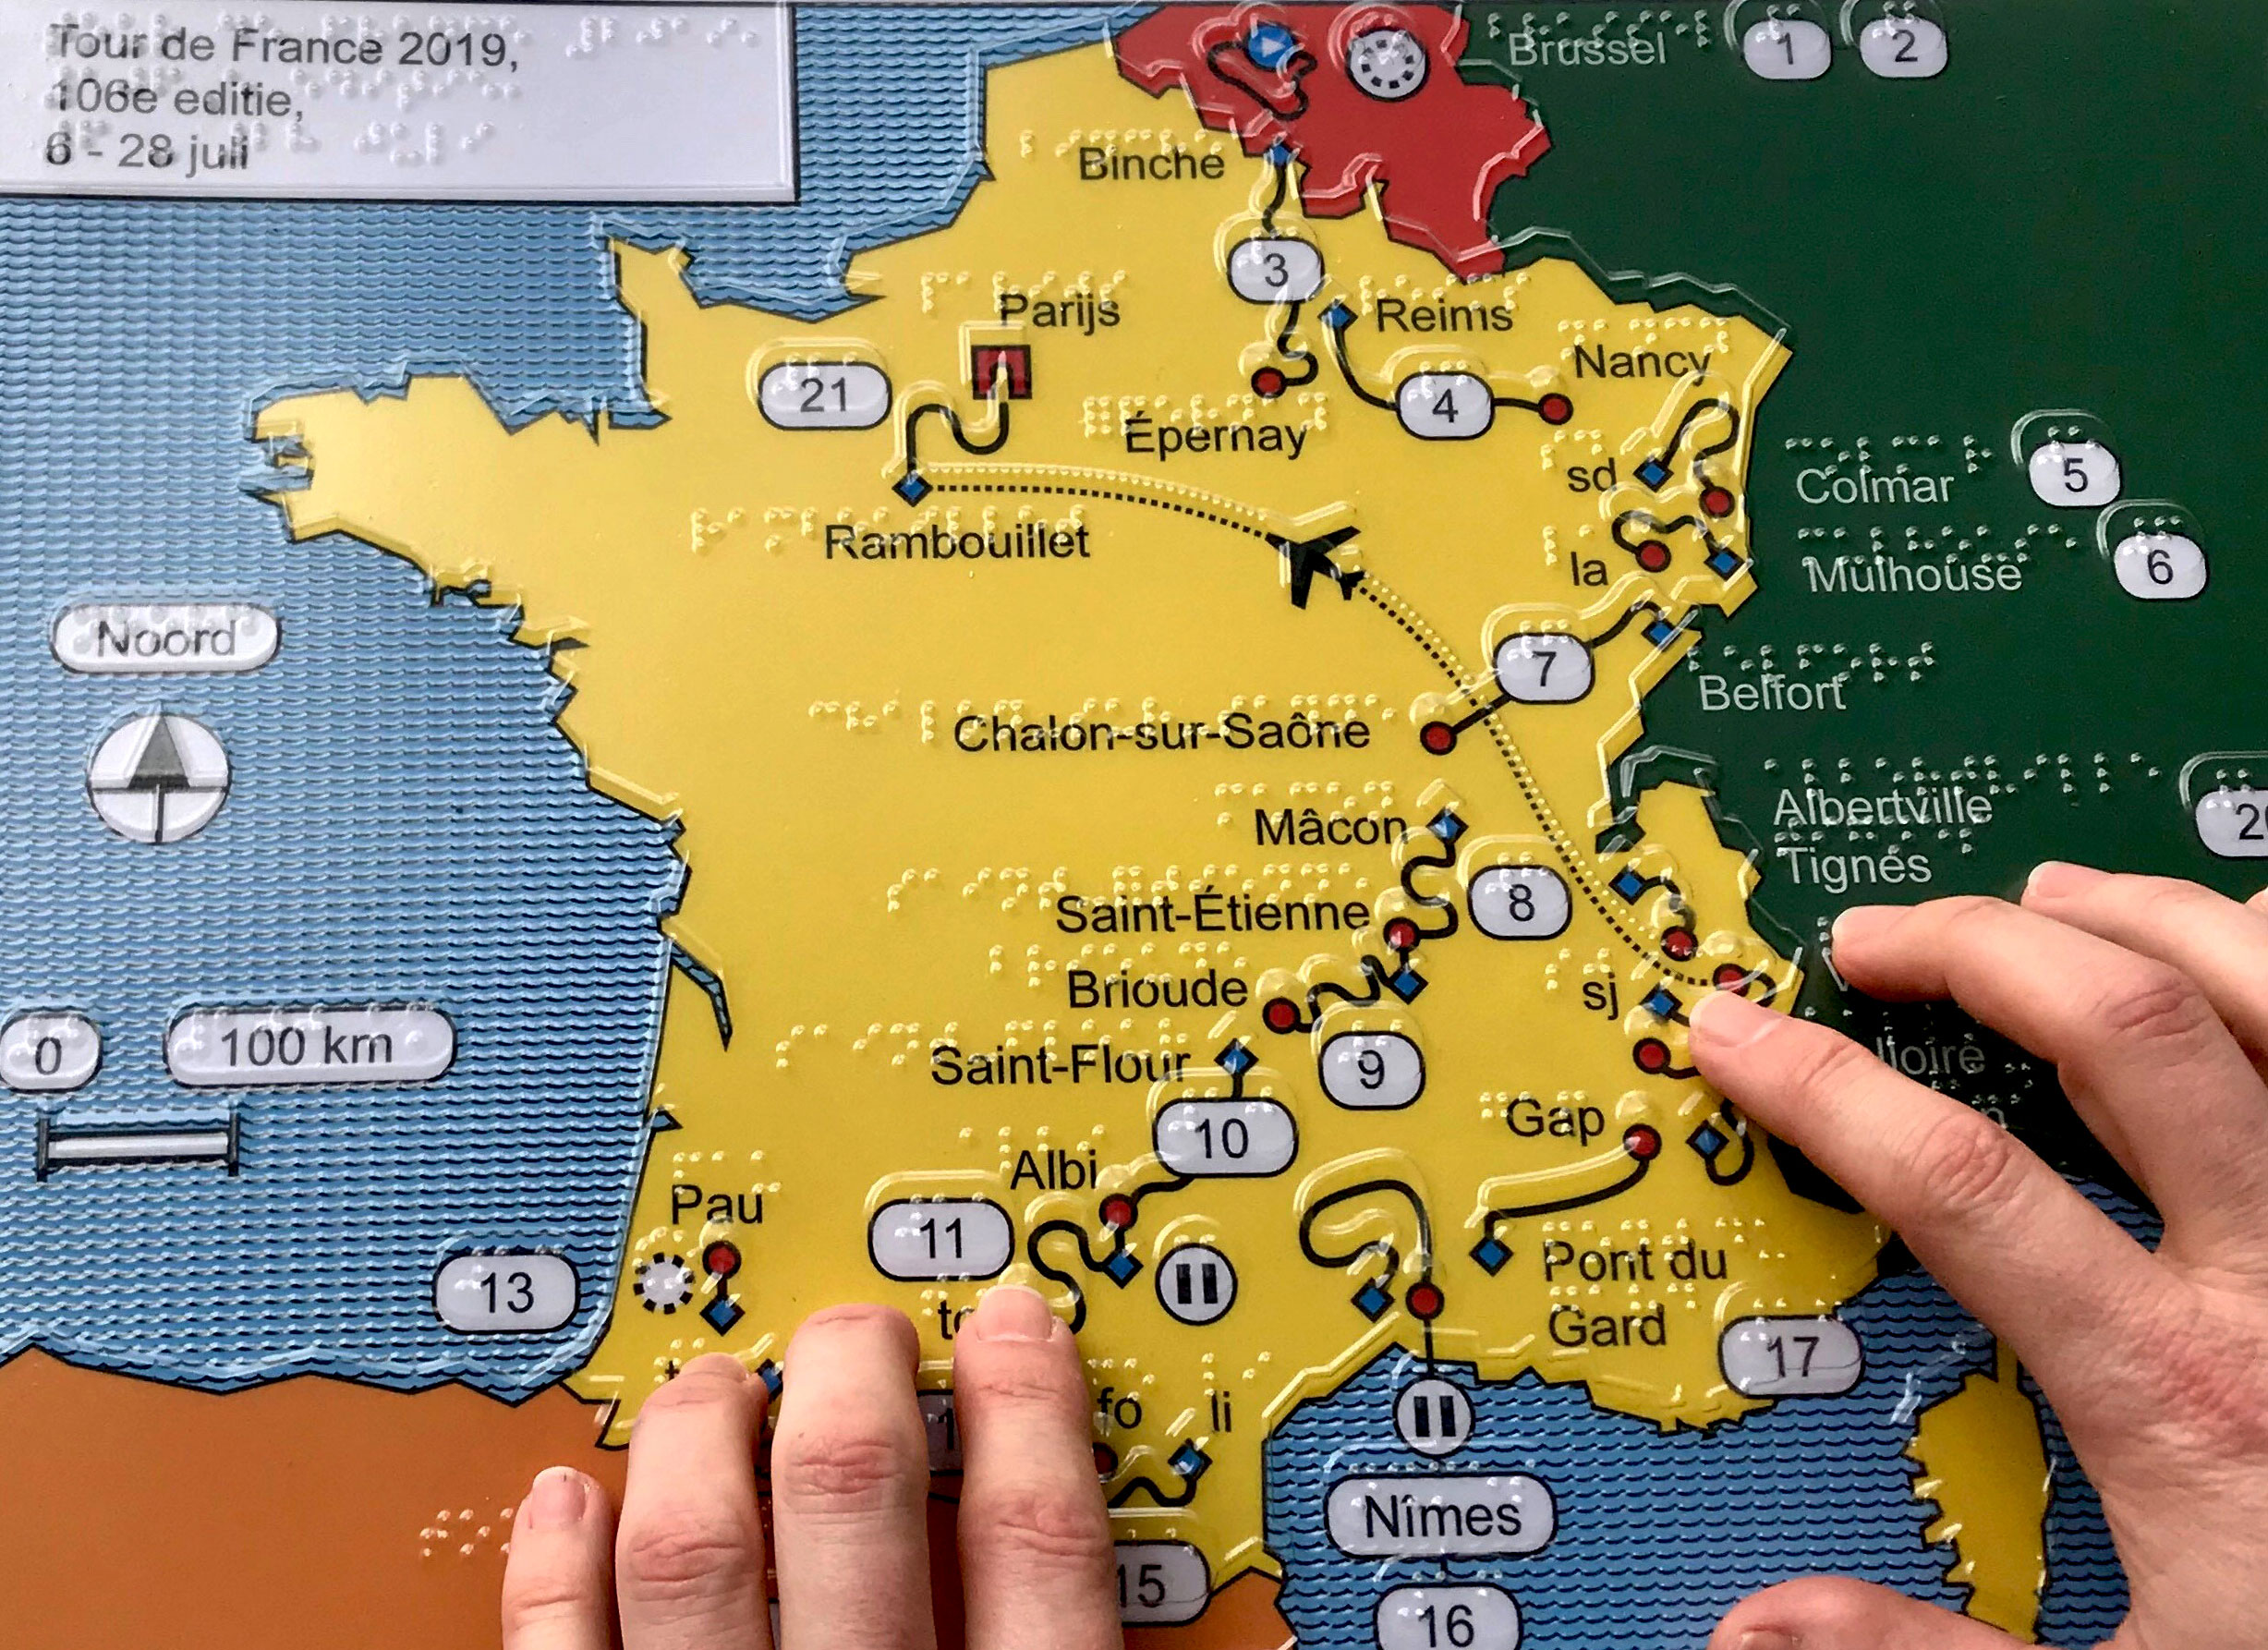 Tour de France 2019, een overzichtskaart in reliëf